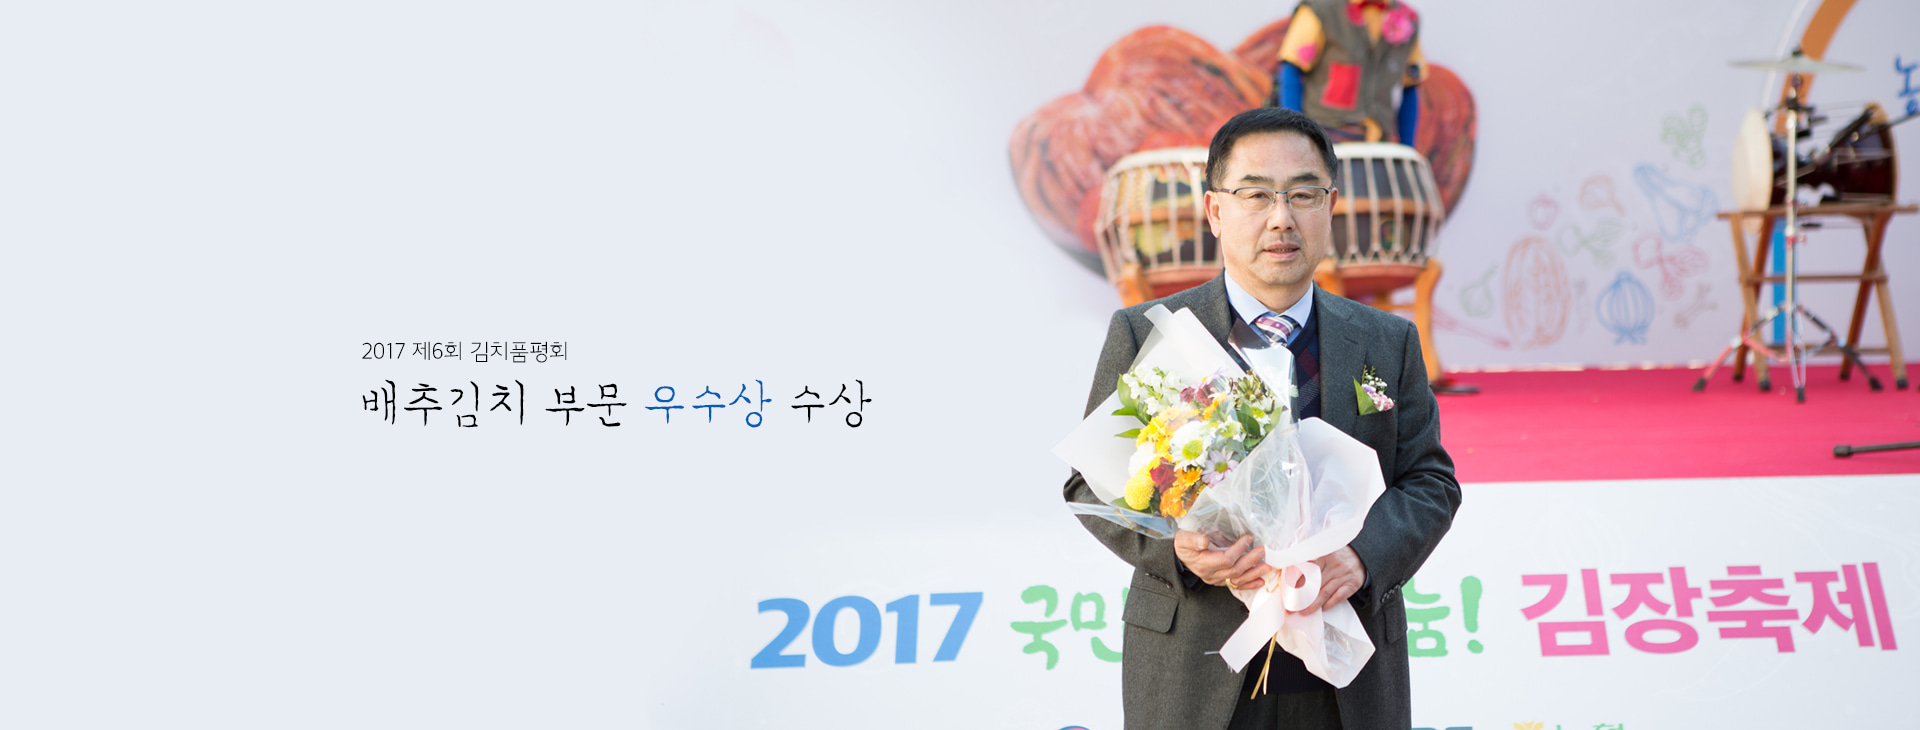 2017 제6회 김치품평회 배추김치 부문 우수상 수상